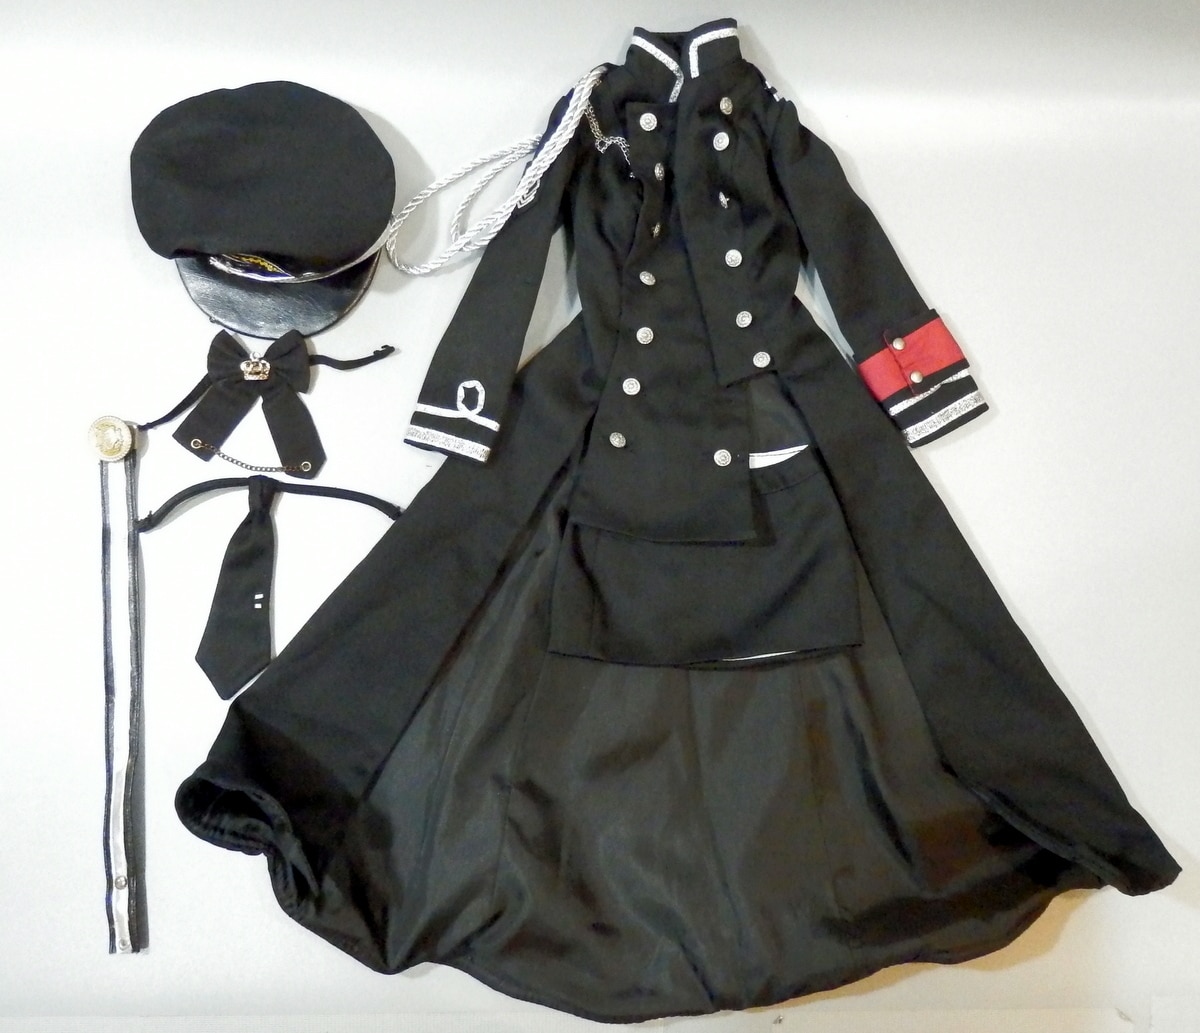 Doll Heart製 SDサイズドール衣装 軍服風衣装セット 黒 | まんだらけ 